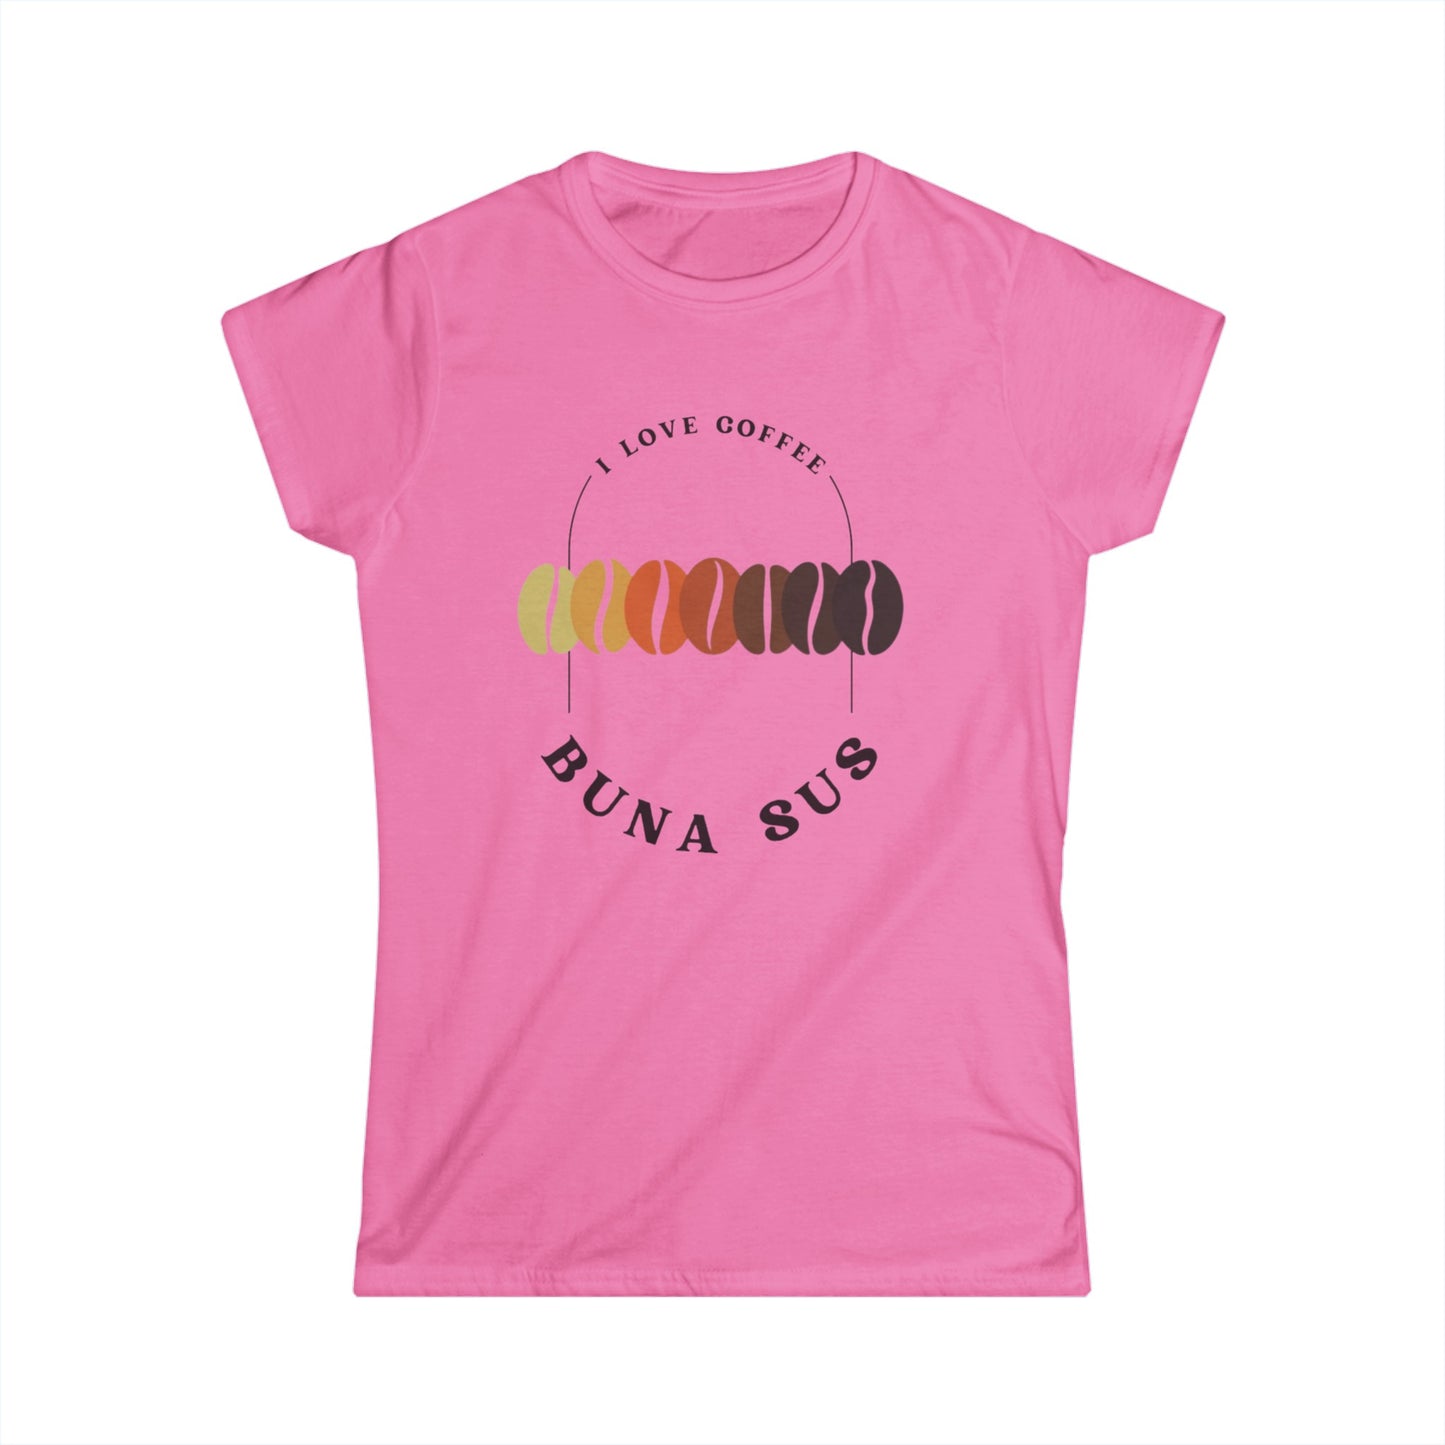 Women's Buna Sus T-shirt